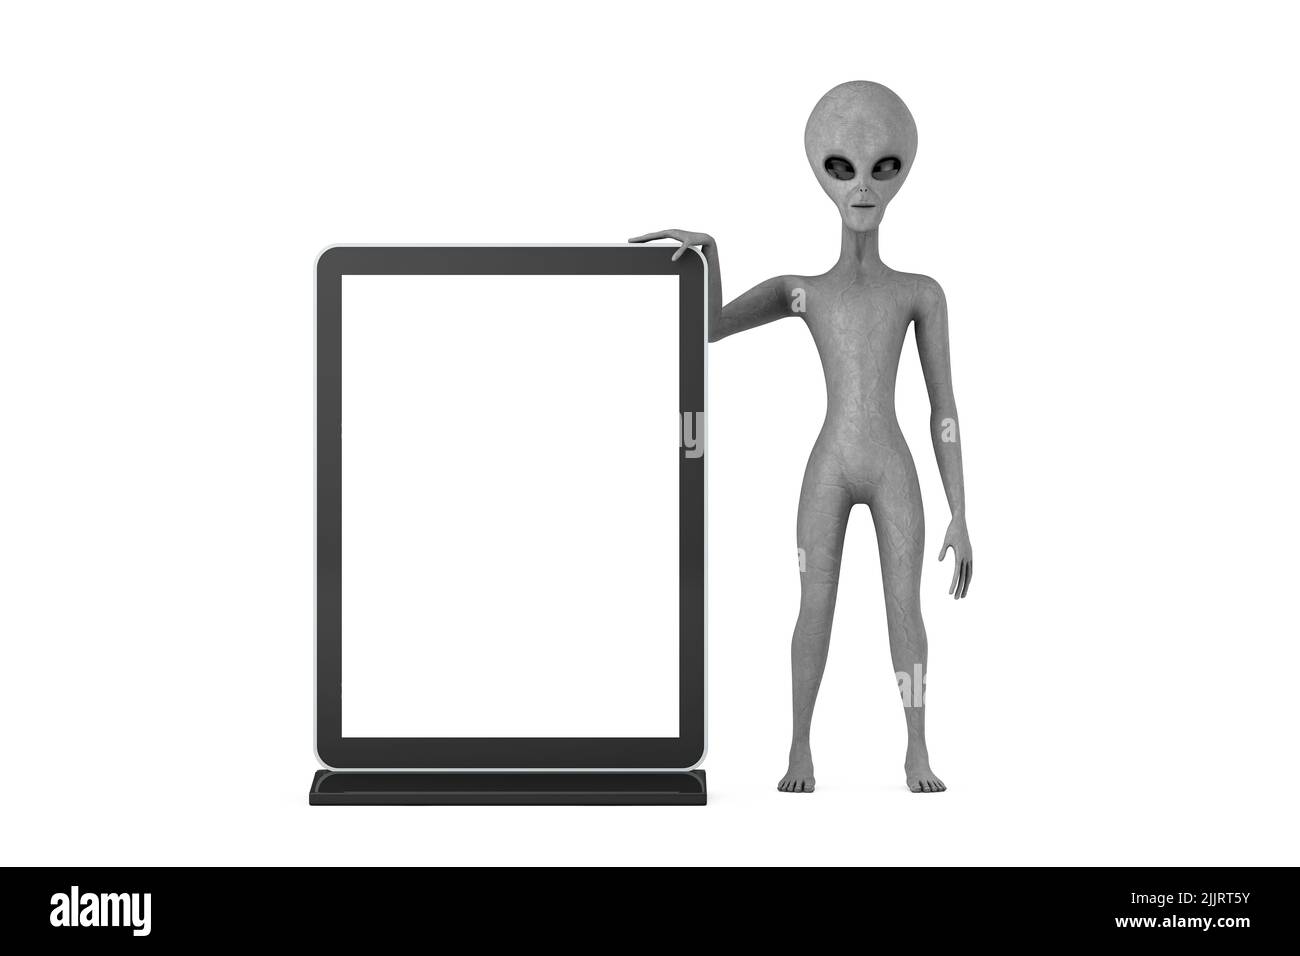 Scary Grey Humanoid Alien Cartoon Charakter Person Maskottchen mit Blank Trade Show LCD-Bildschirm-Display-Stand als Vorlage für Ihr Design auf einem weißen Backgr Stockfoto